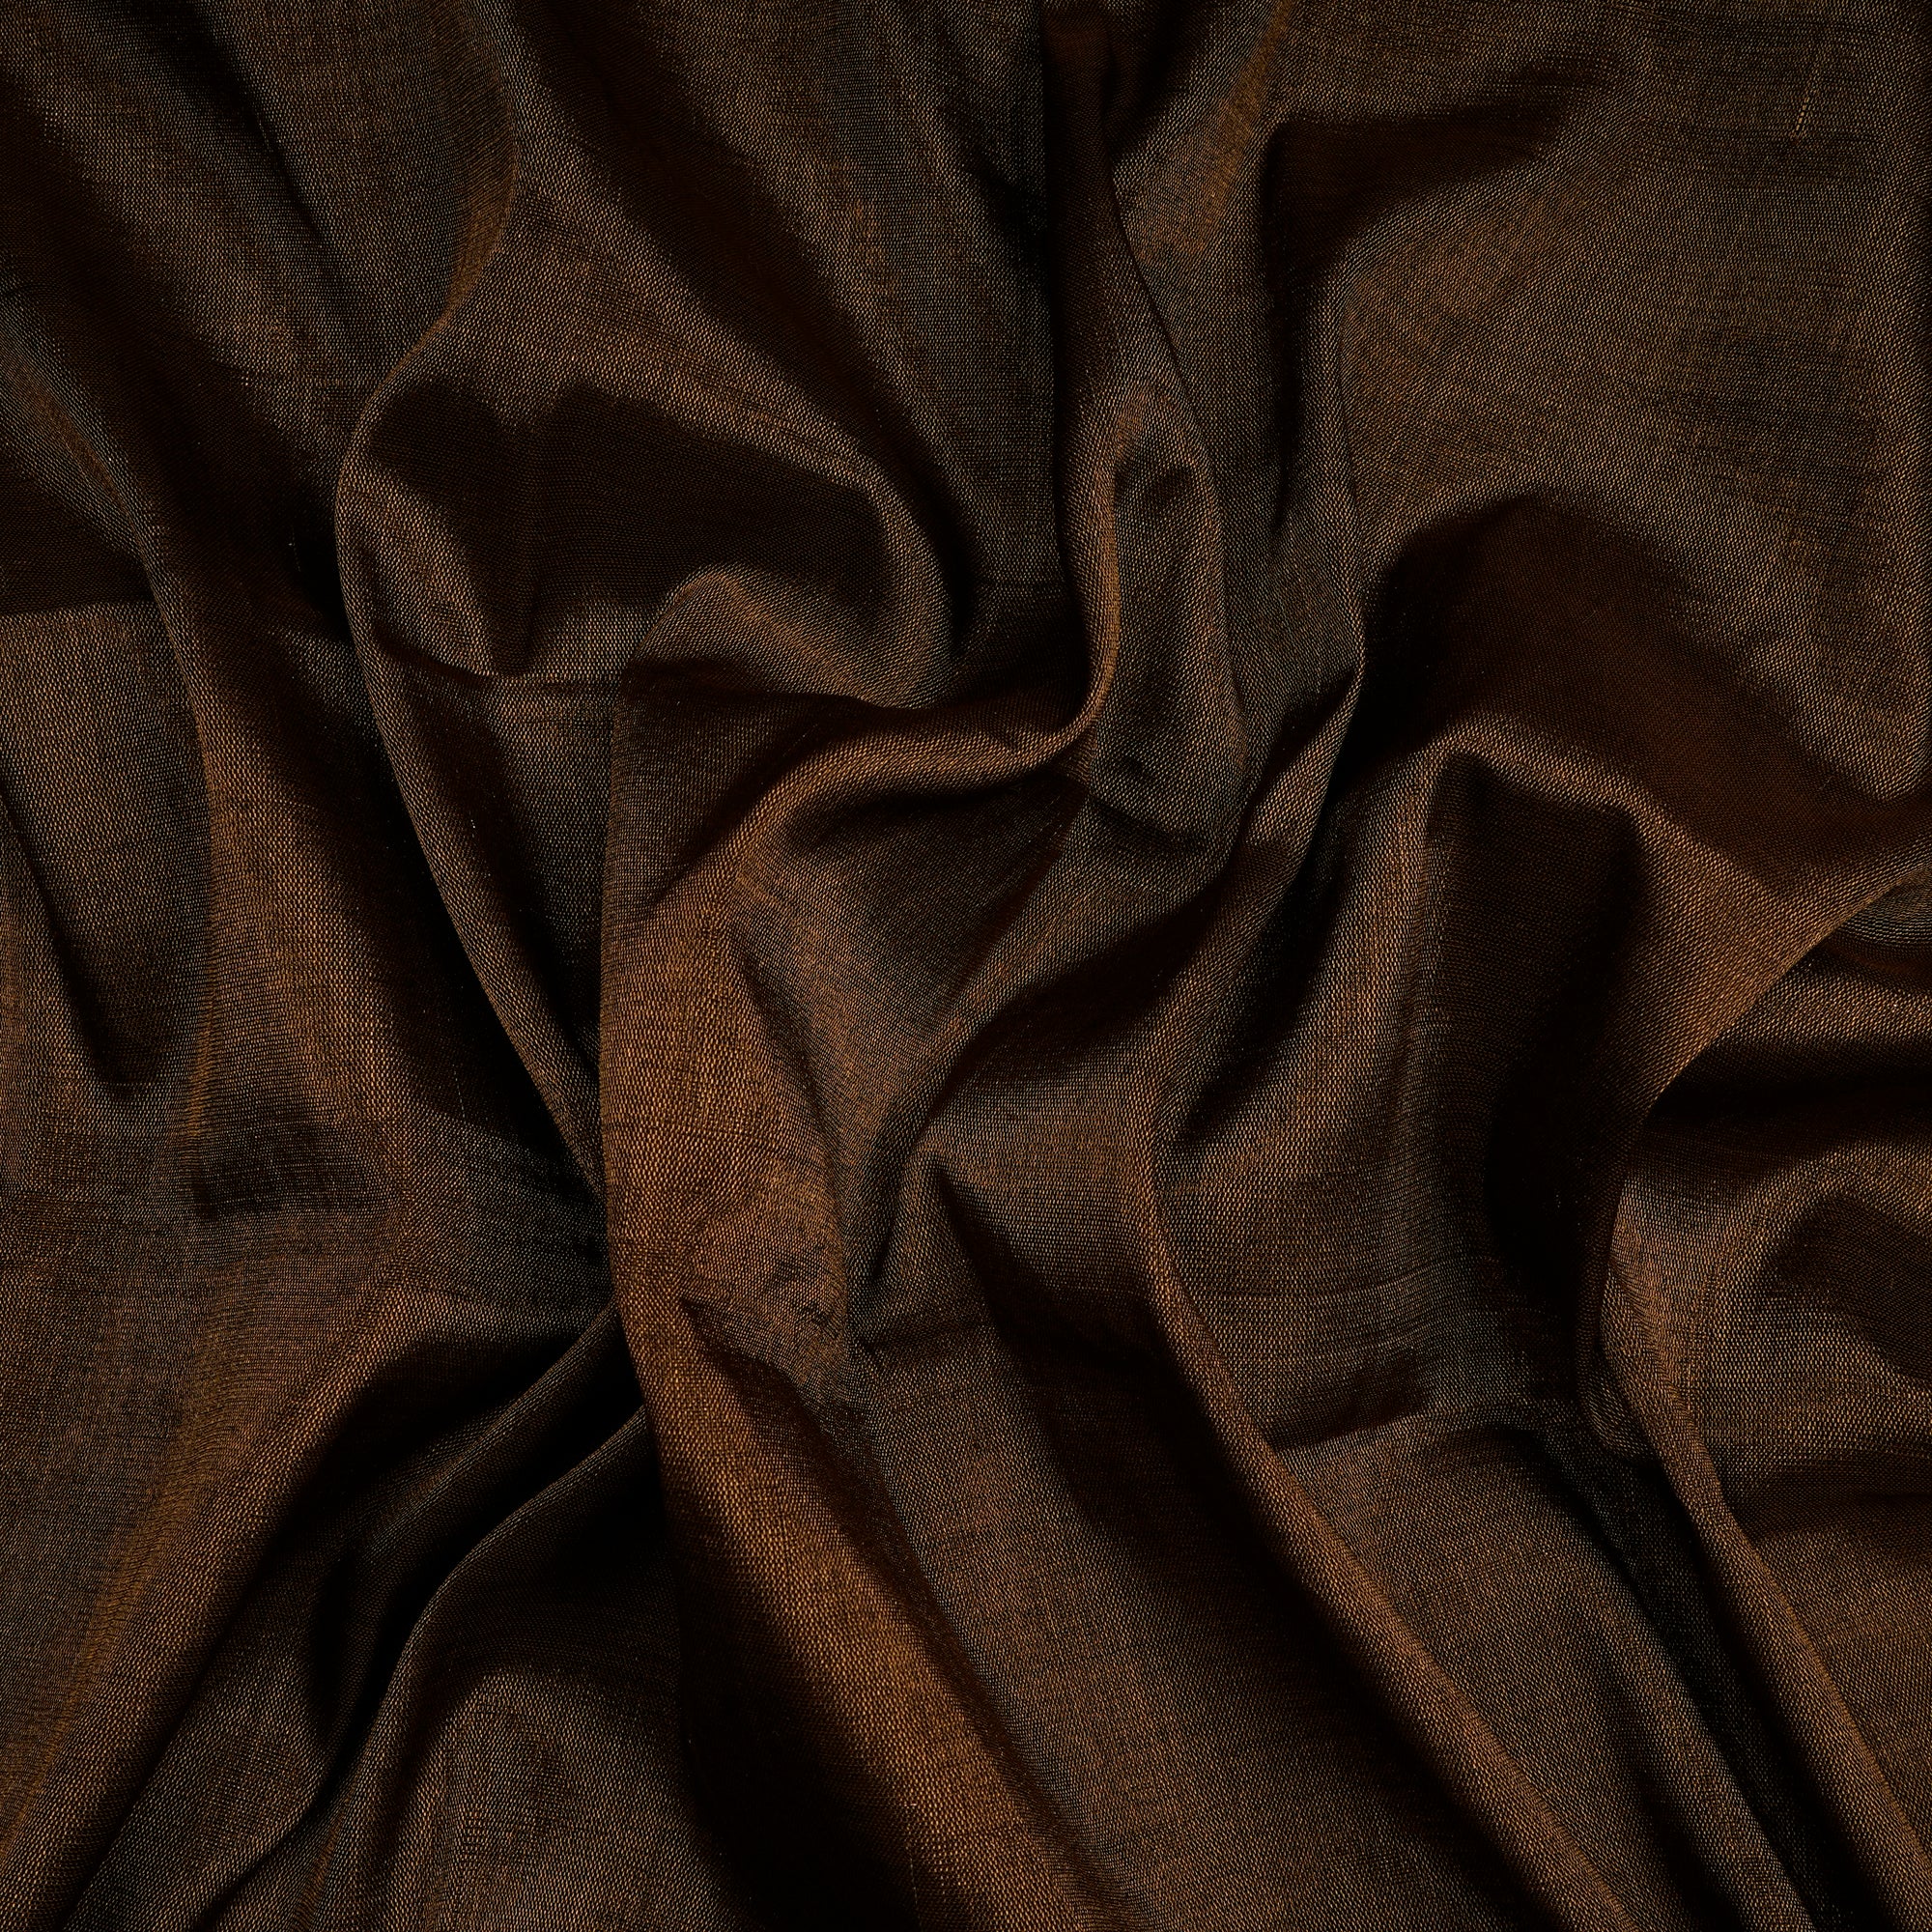 Dark Antique Gold Handwoven Heavy Tissue Fabric